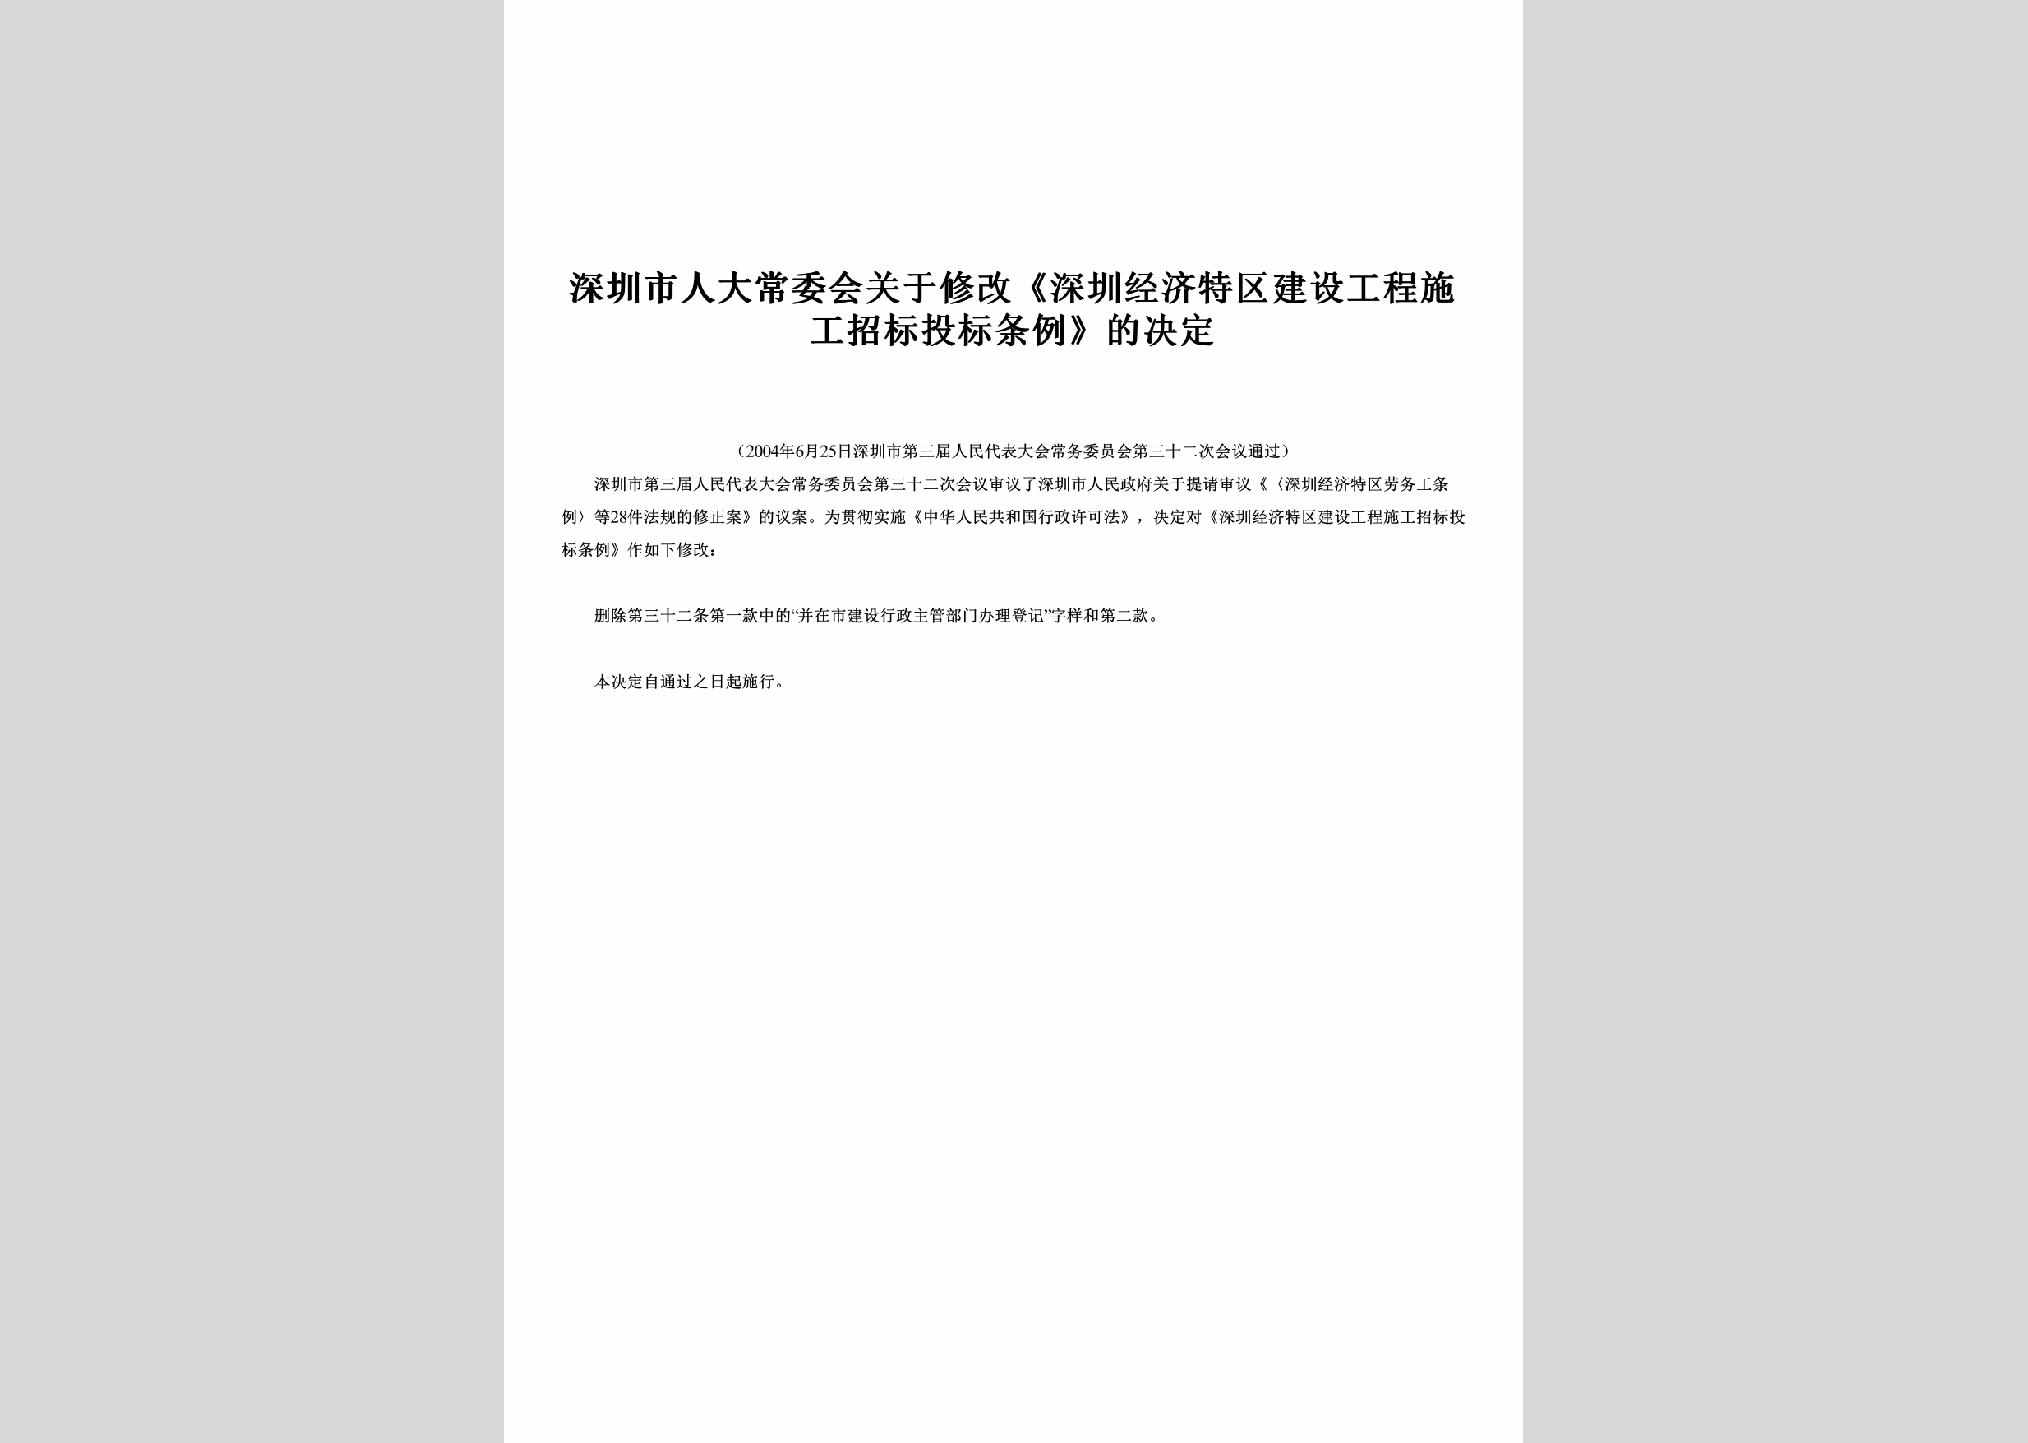 GD-GCSGZBTL-2004：关于修改《深圳经济特区建设工程施工招标投标条例》的决定